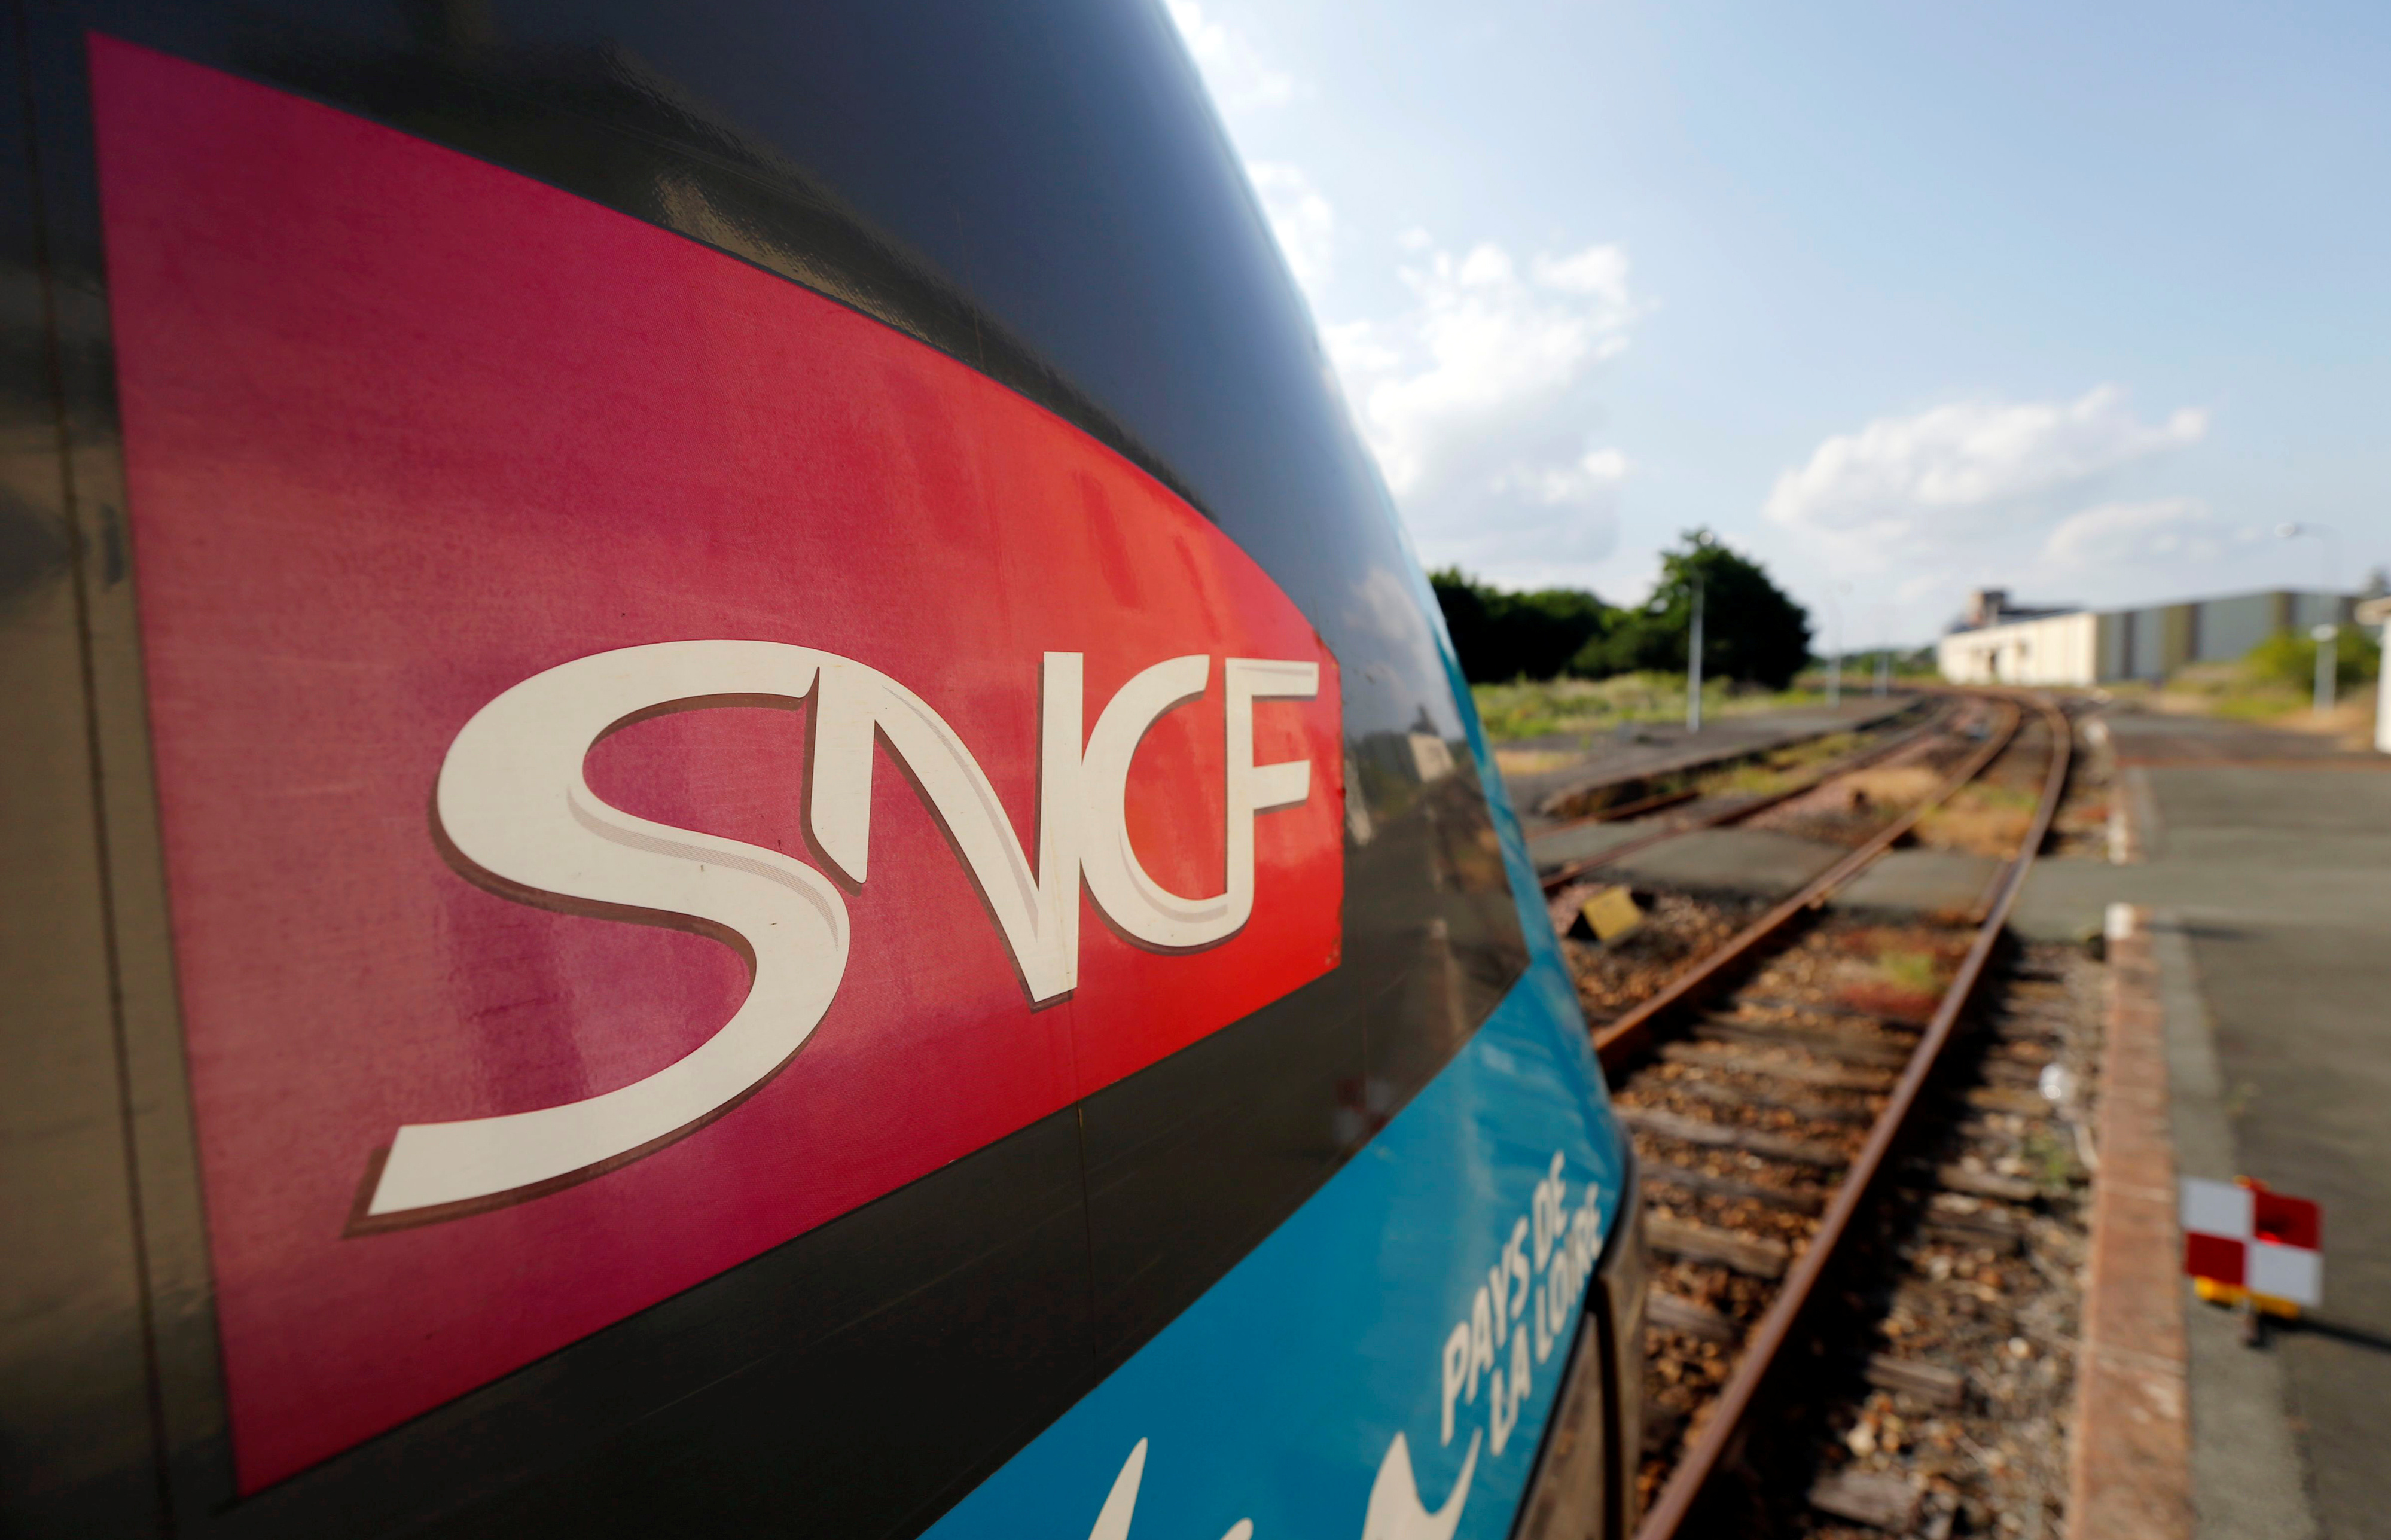 La SNCF revient fort en réalisant un bénéfice net de près d'un milliard d'euros au premier semestre